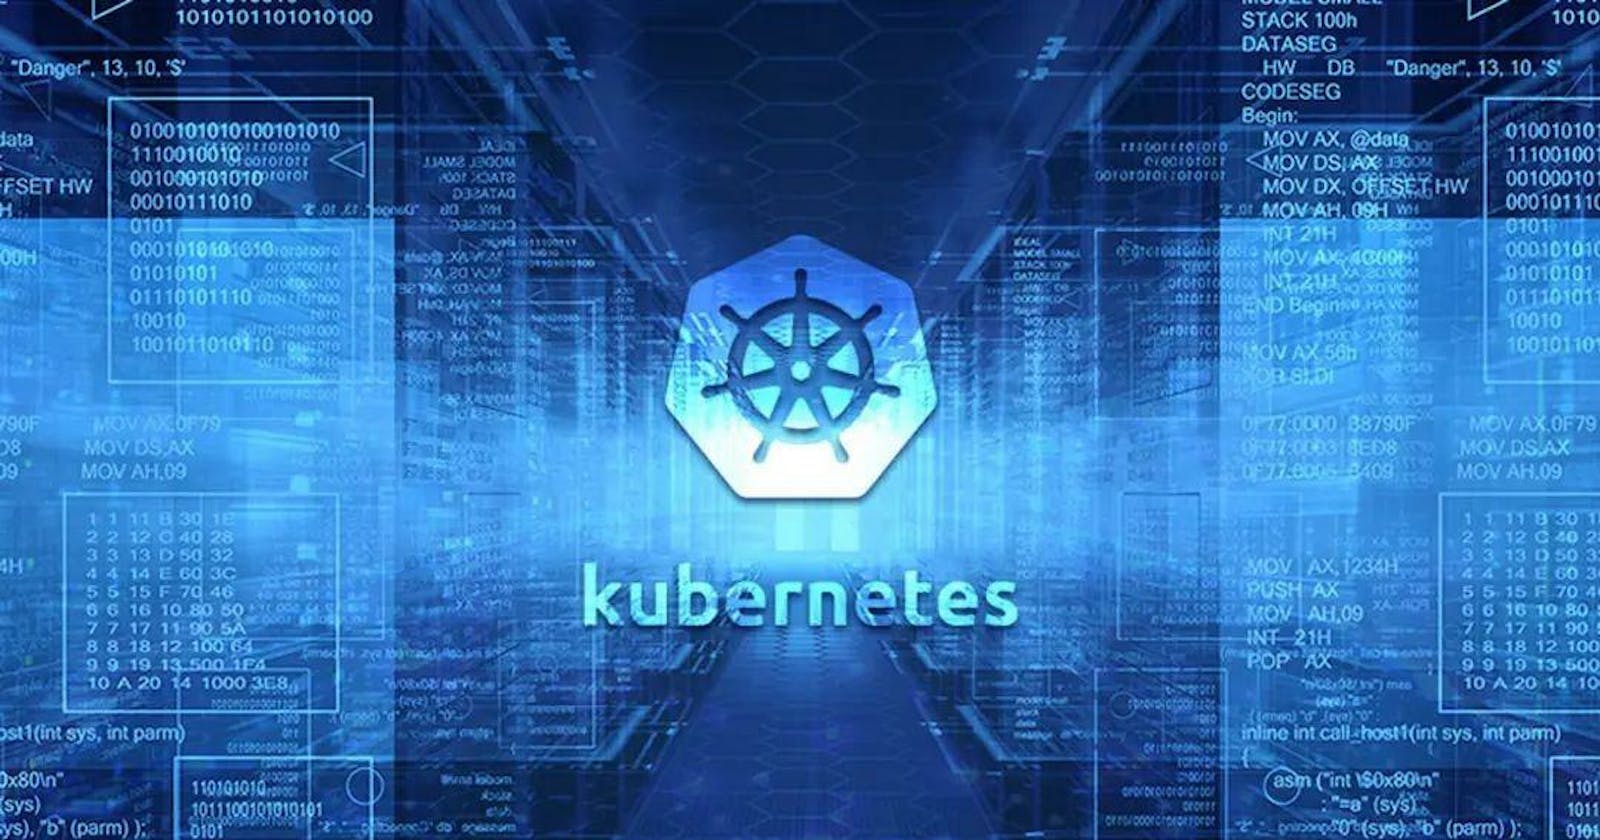 Kubernetes Web-UI with Python-CGI